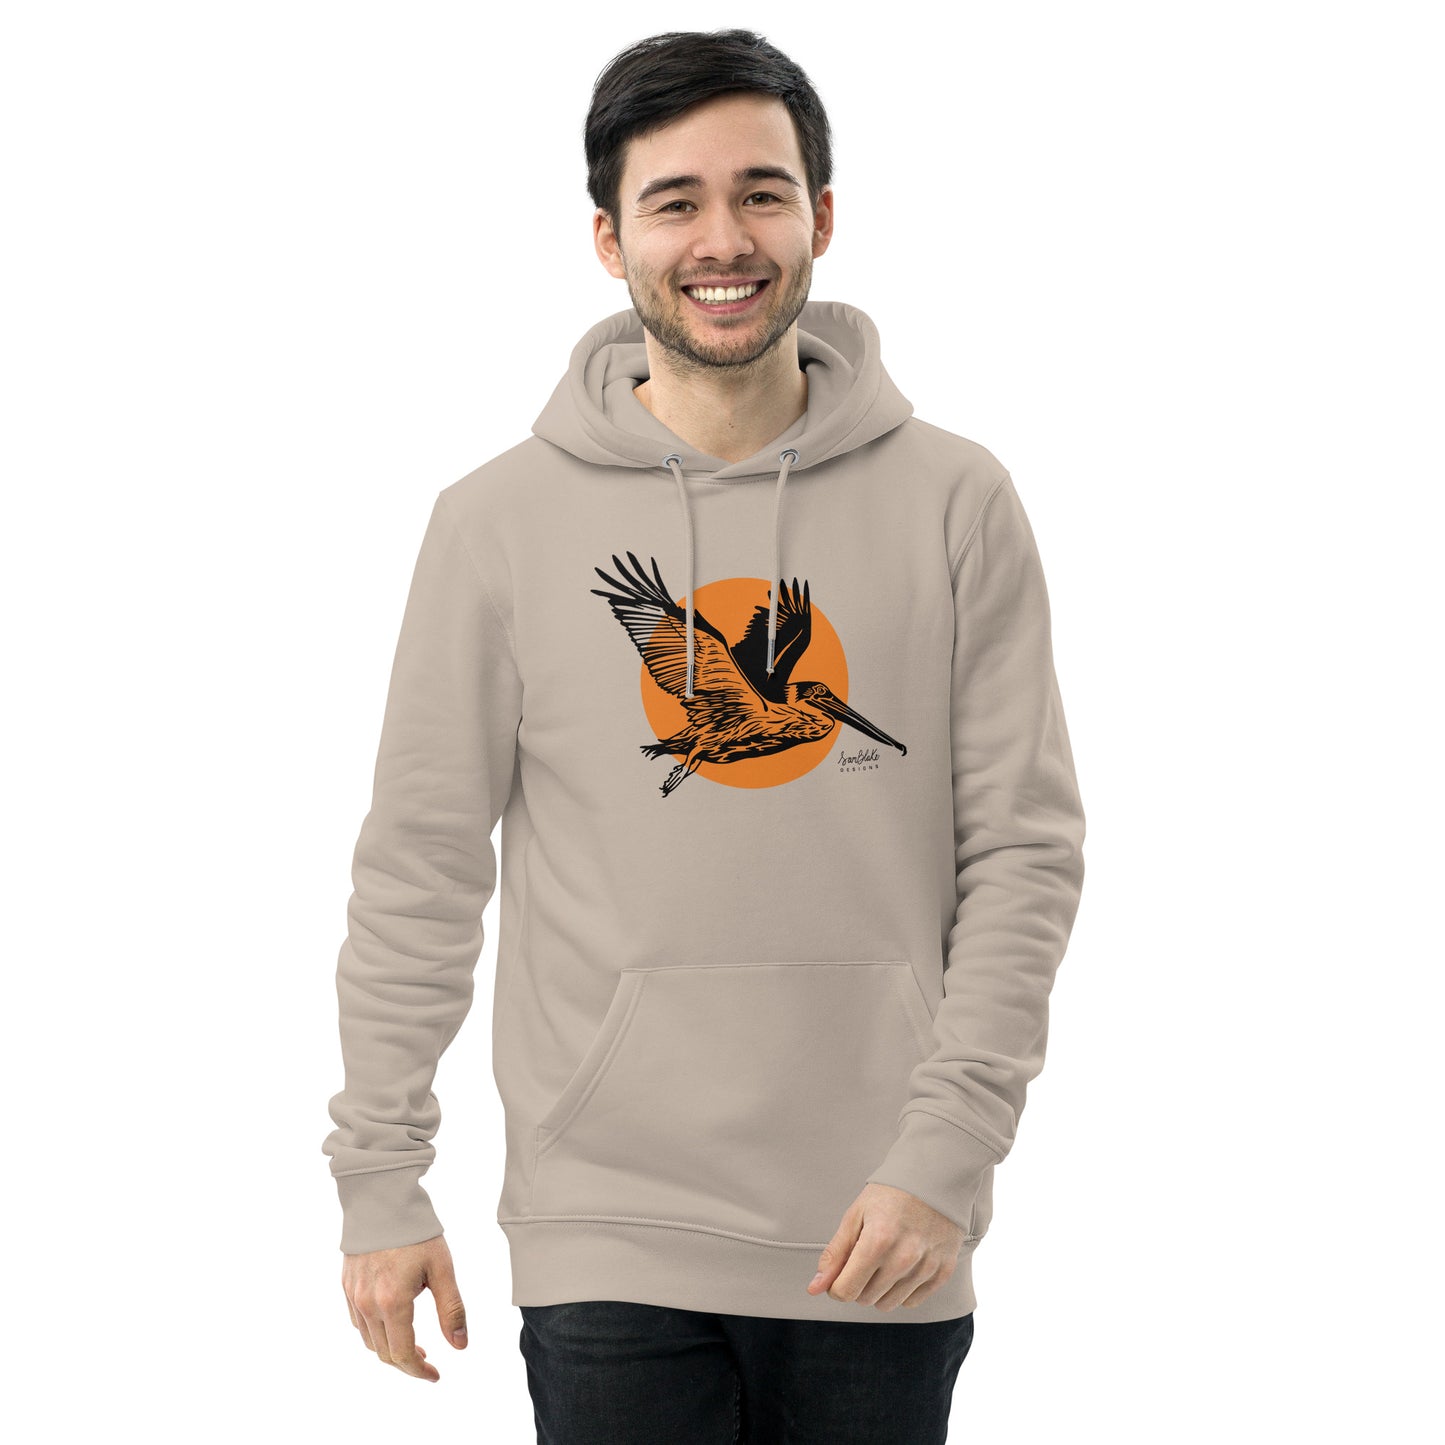 In Flight- Unisex organic hoodie